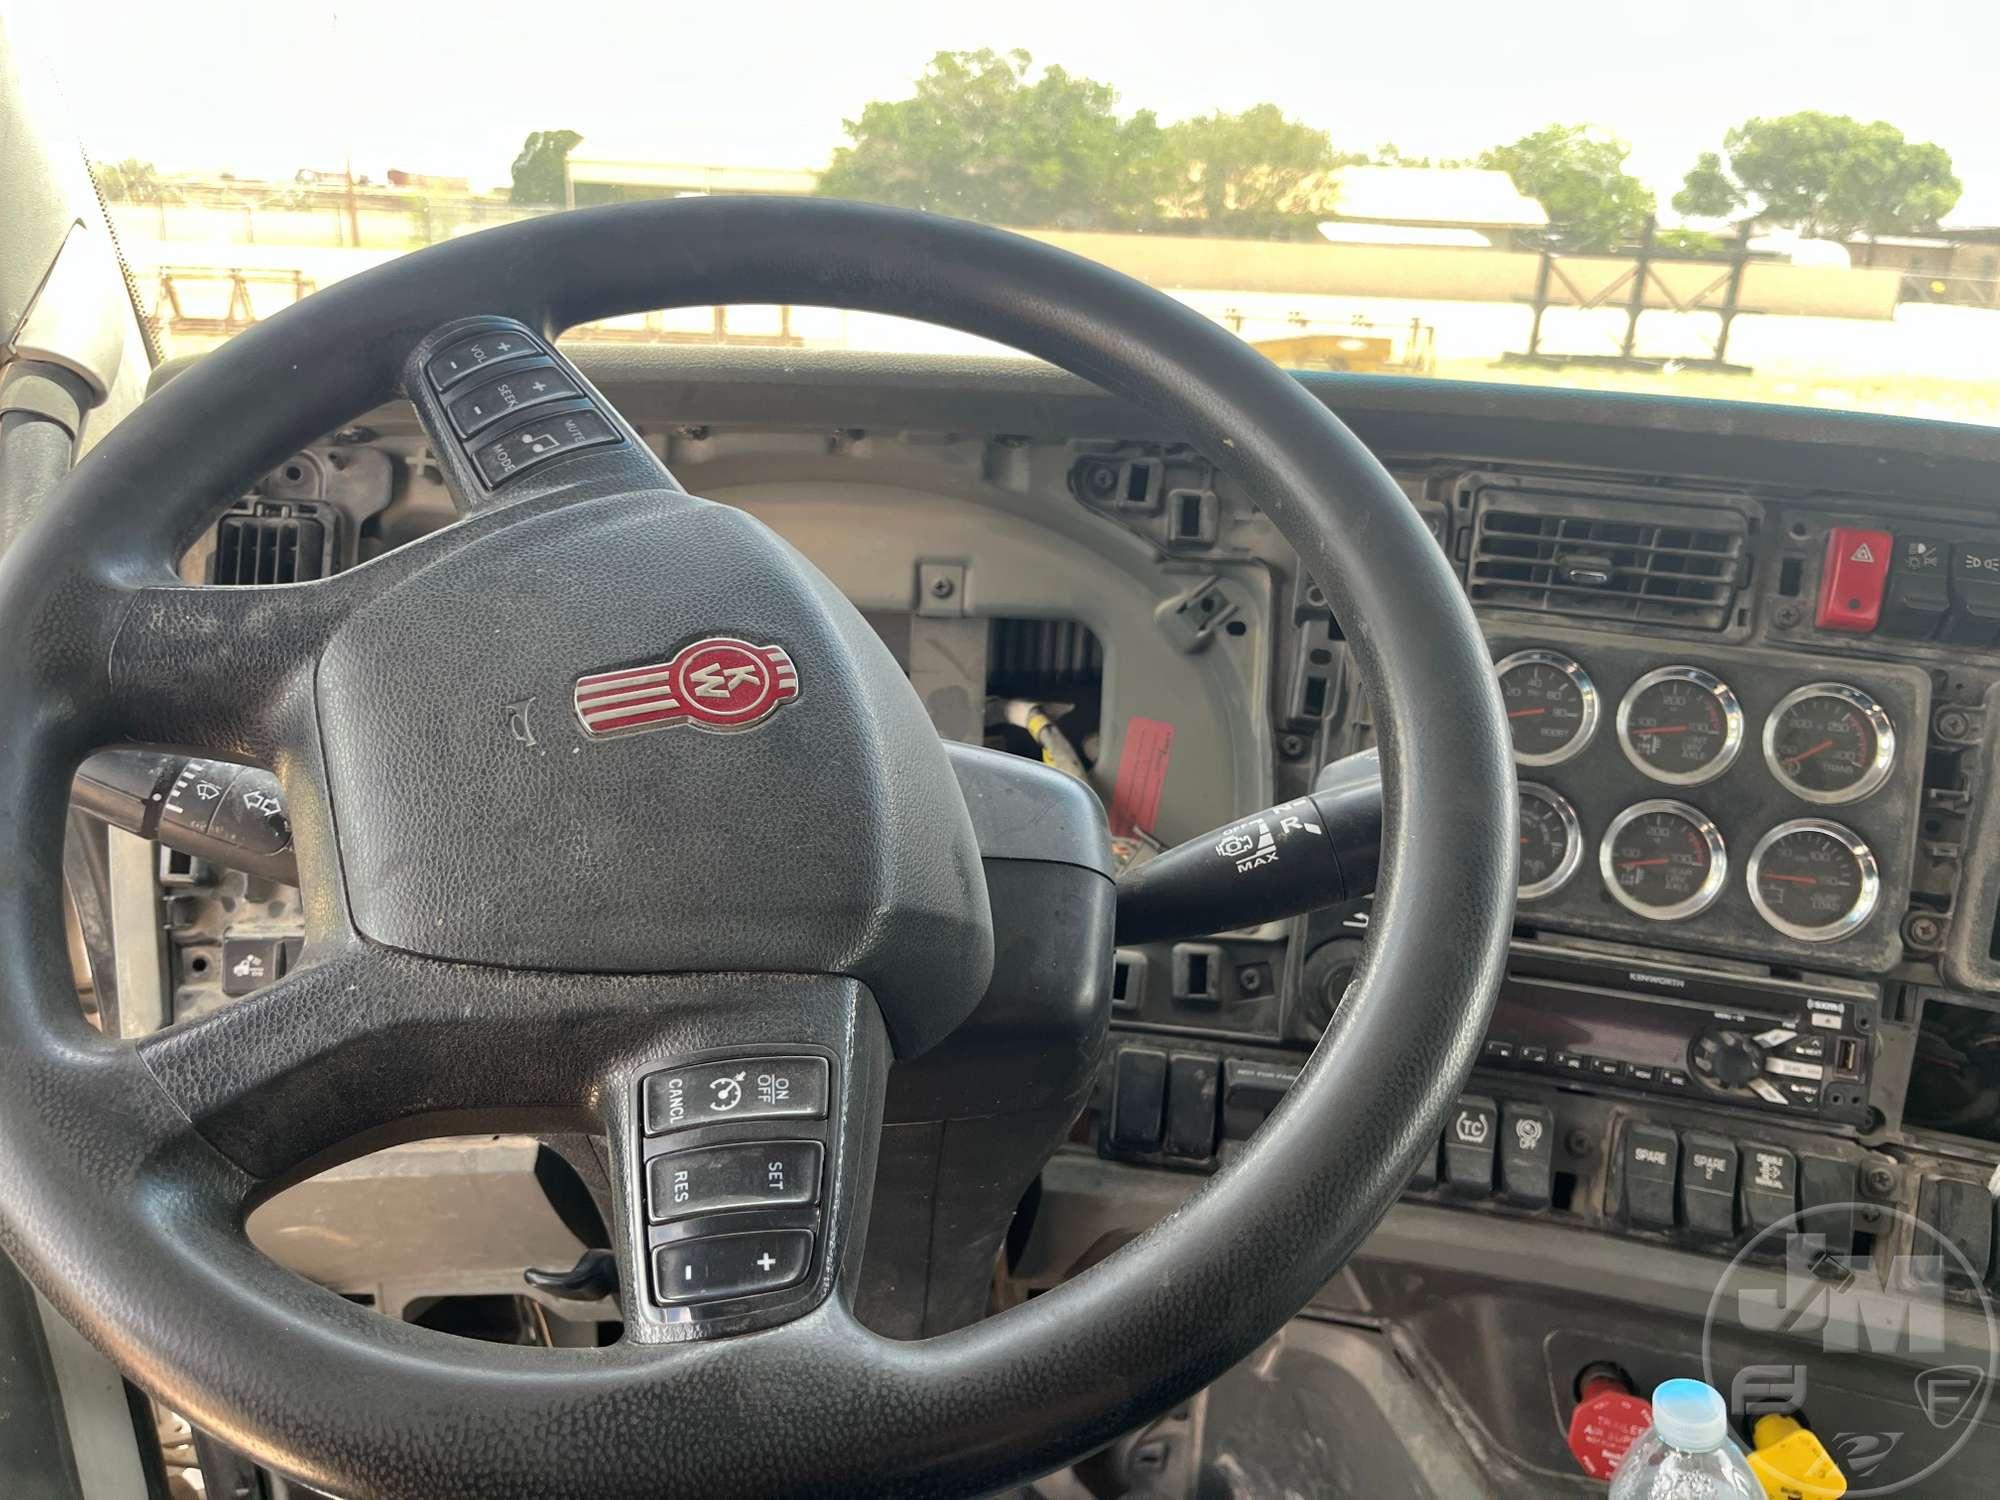 2019 KENWORTH T880 T/A DAY CAB TRUCK TRACTOR VIN: 1XKZDP9X7KJ296379